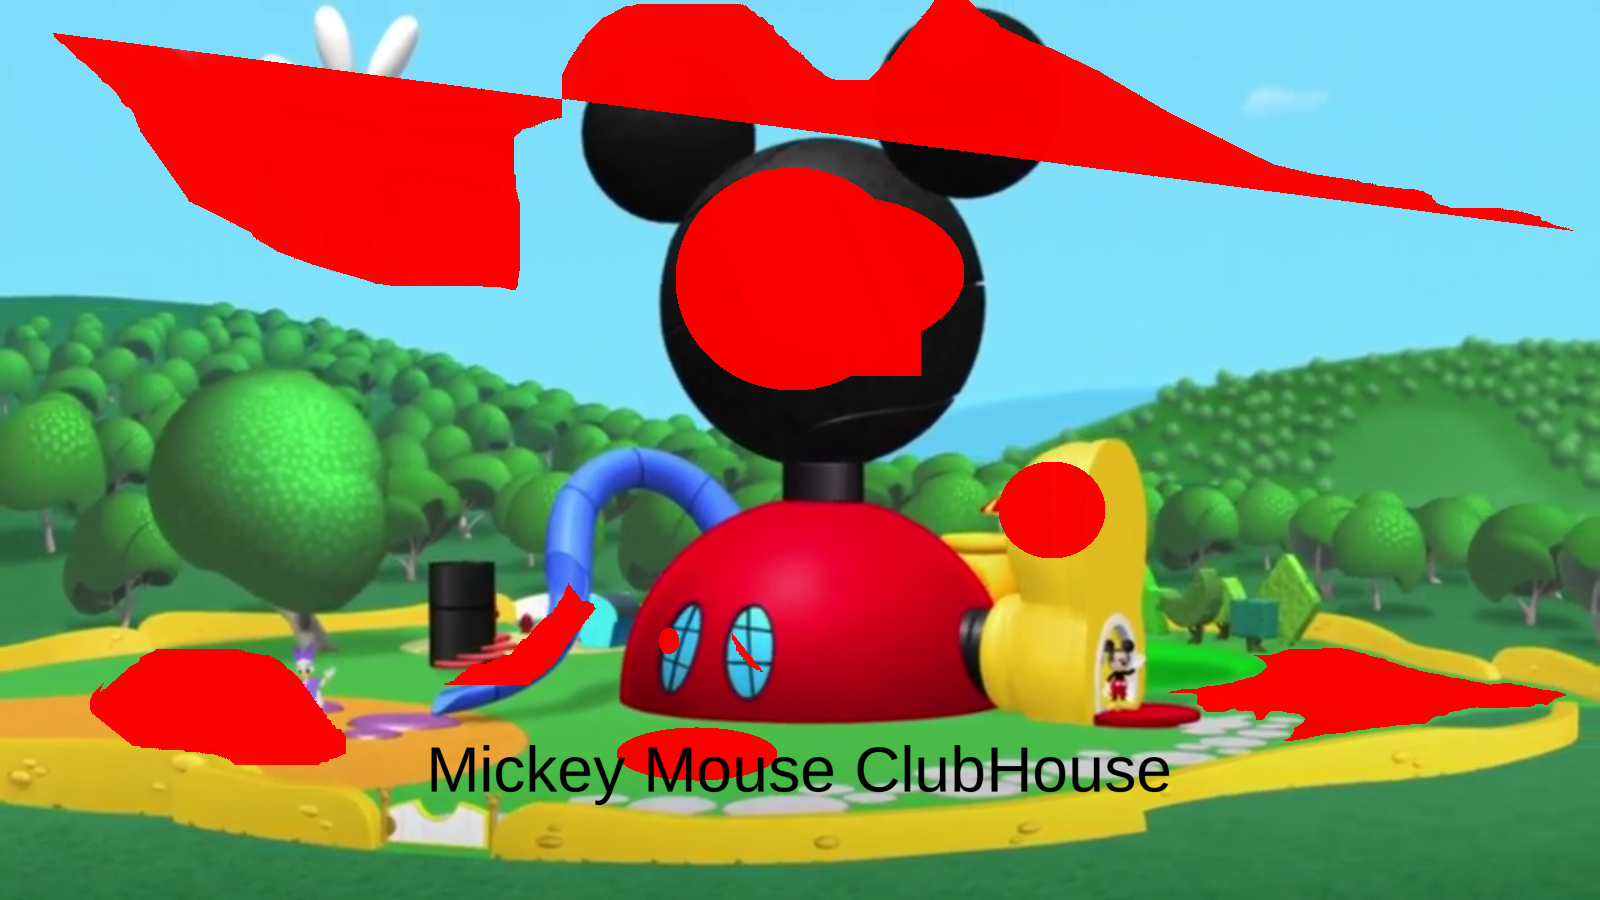 Mickey B - opprettet av MinecraftBakingcake med paint